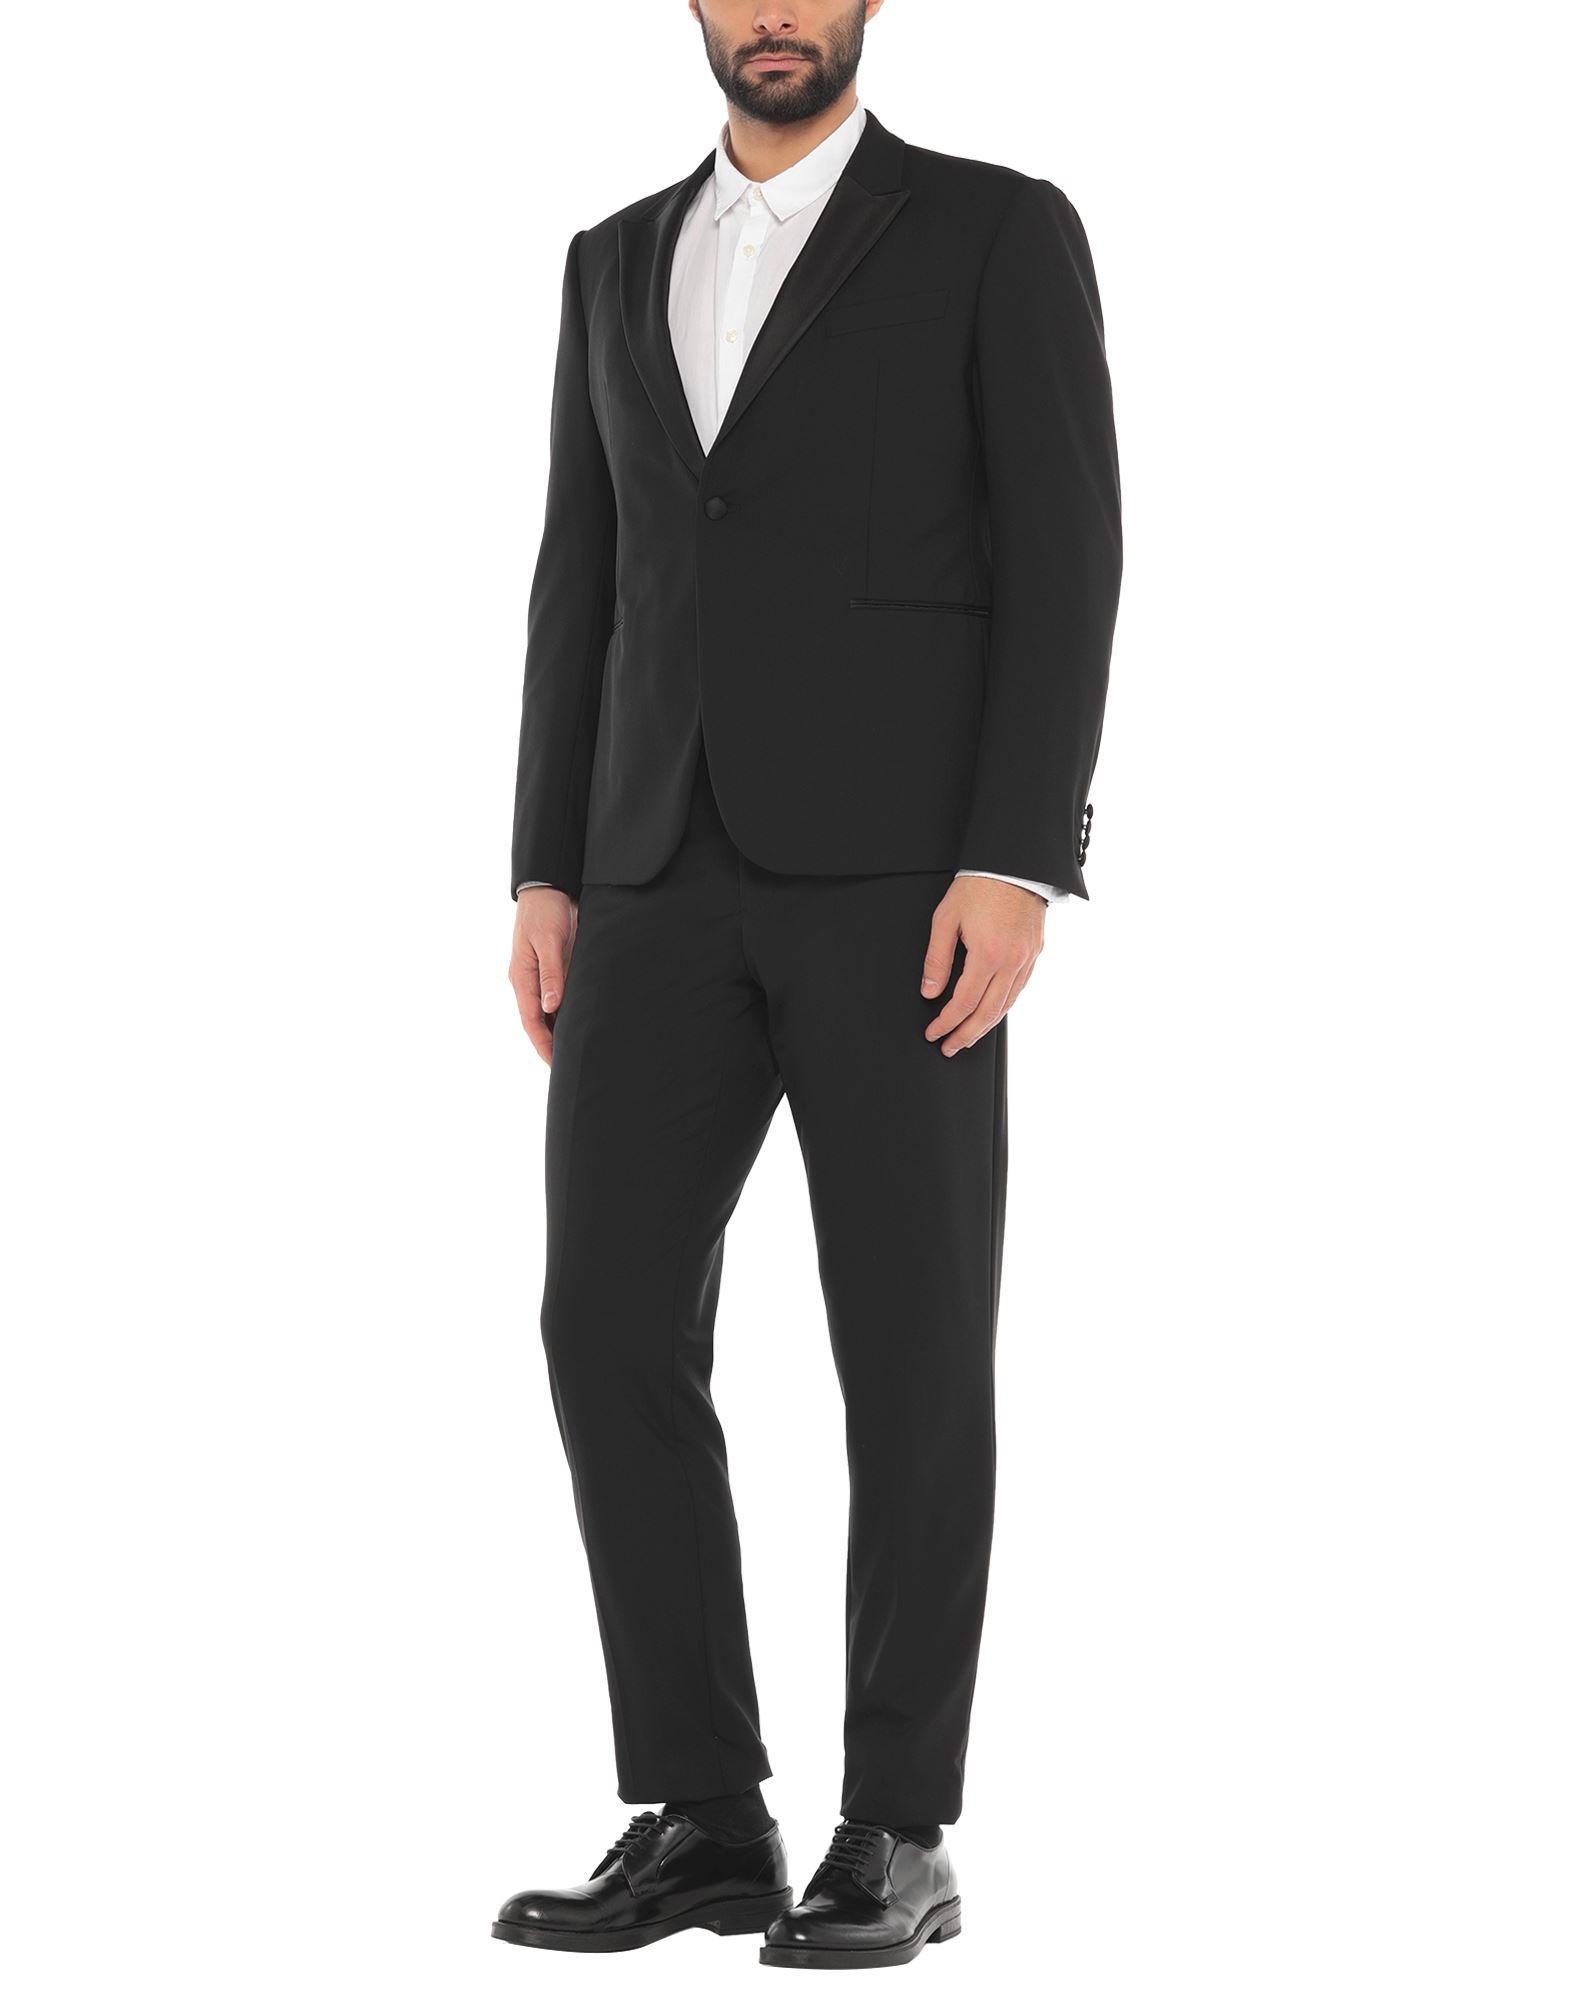 EMPORIO ARMANI Suits - Item 49606247